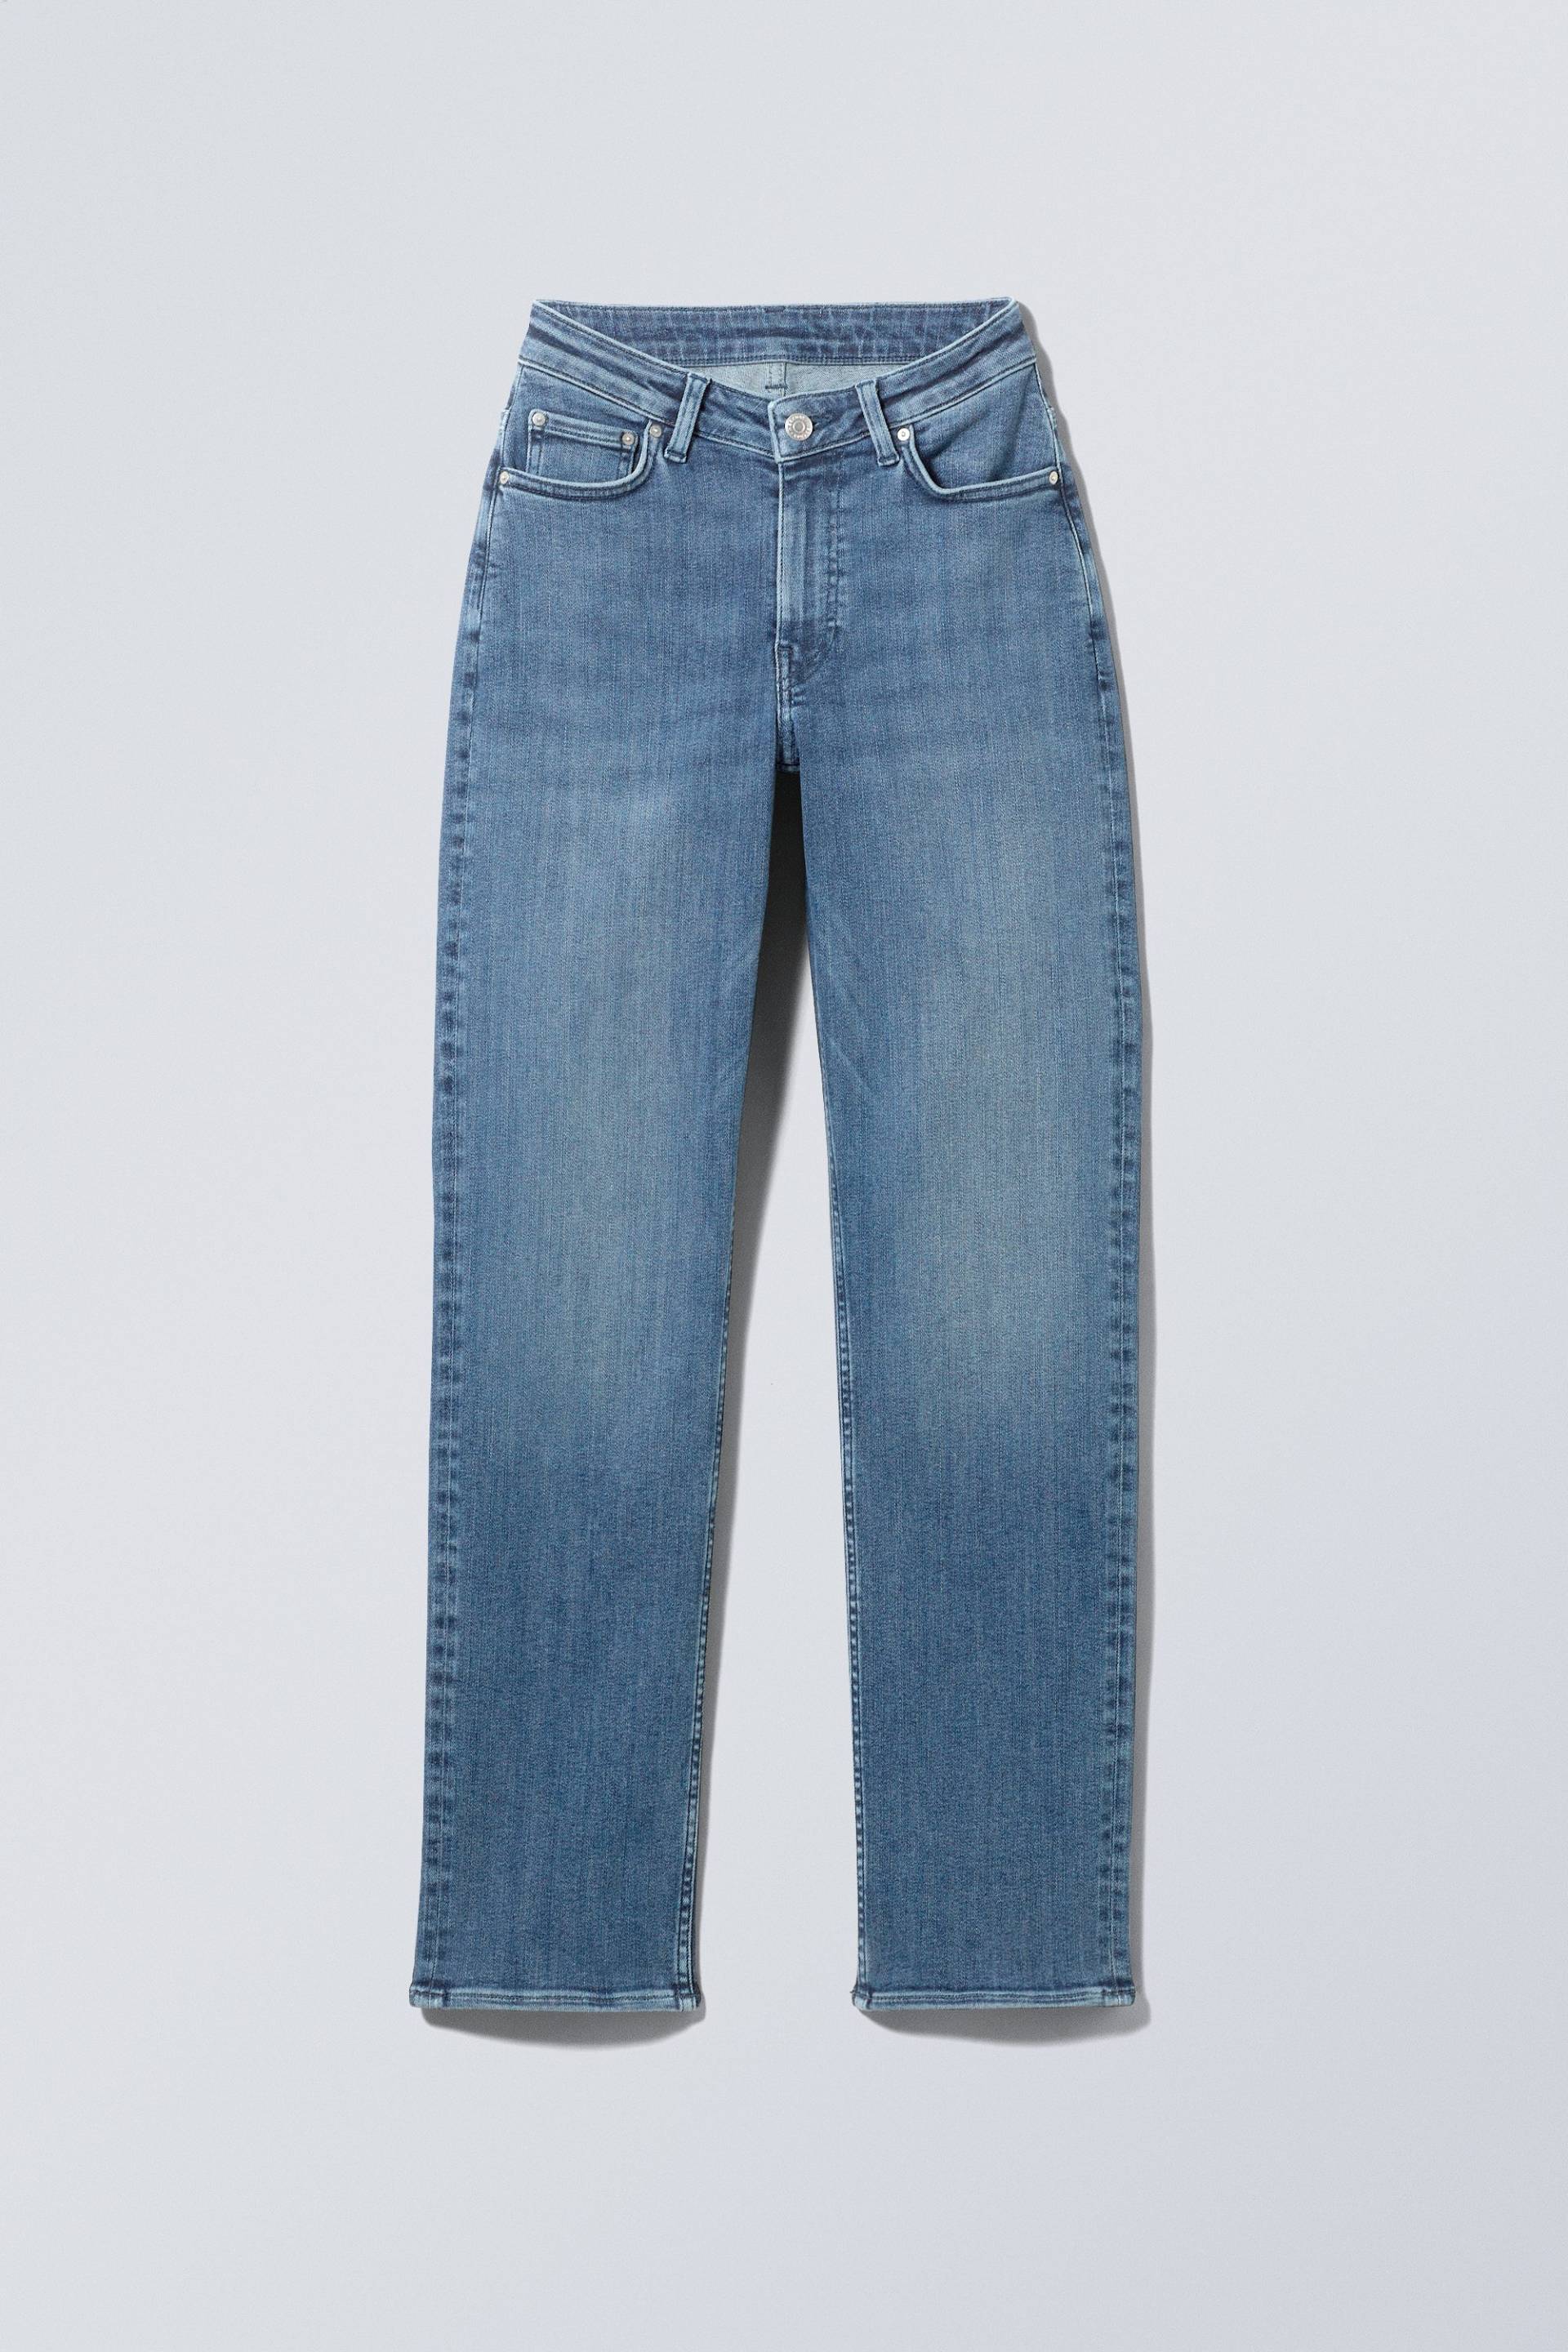 Weekday Twig Curve Jeans mit mittelhohem Bund und geradem Bein Blaulila, Straight in Größe 24/32. Farbe: Deep blue von Weekday